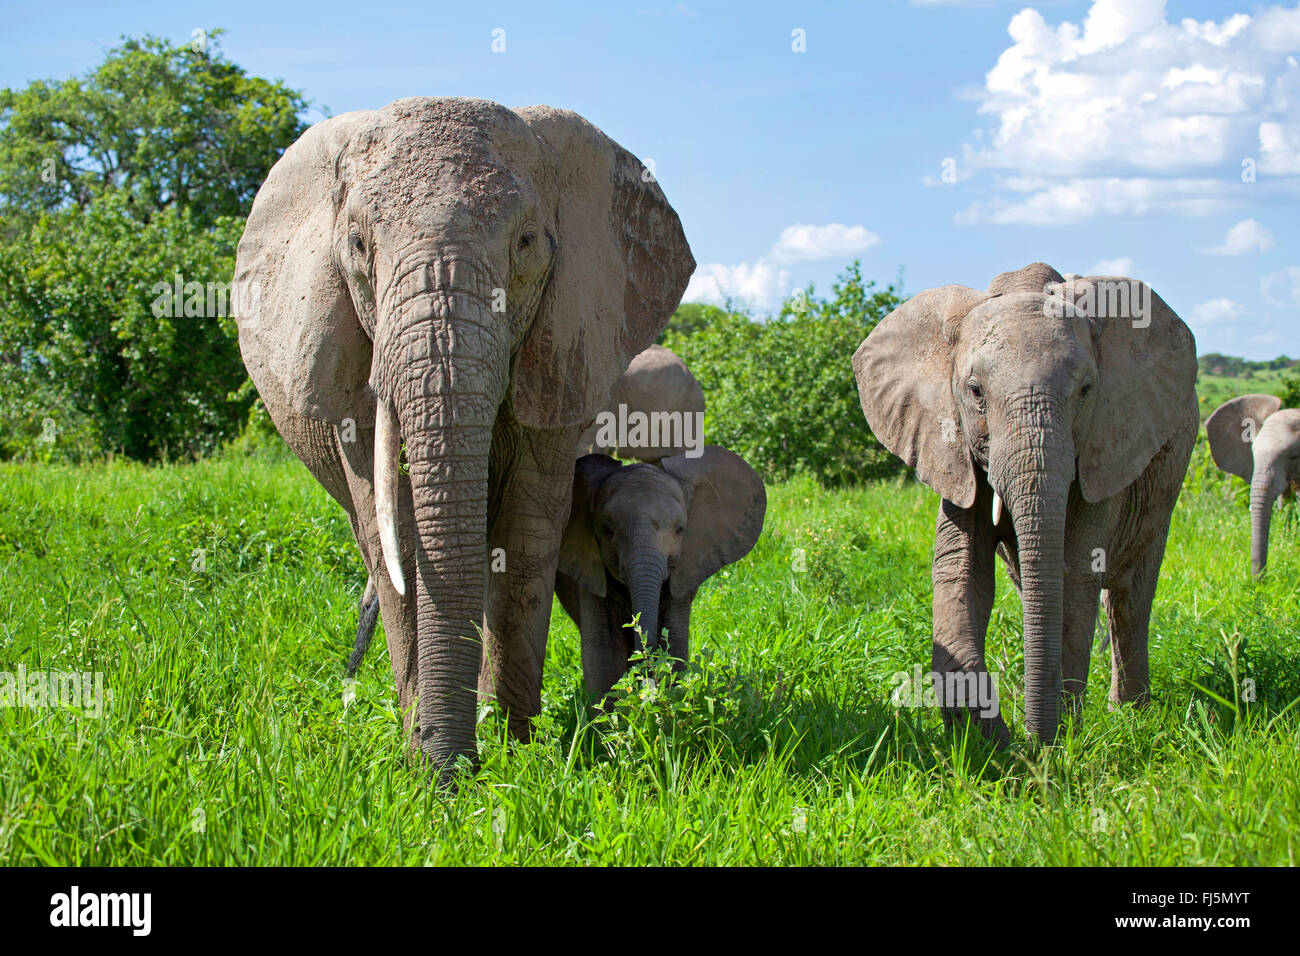 Afrikanischer Elefant (Loxodonta Africana), Kuh Elefanten mit Kälbern auf Rasen, Kenia Stockfoto